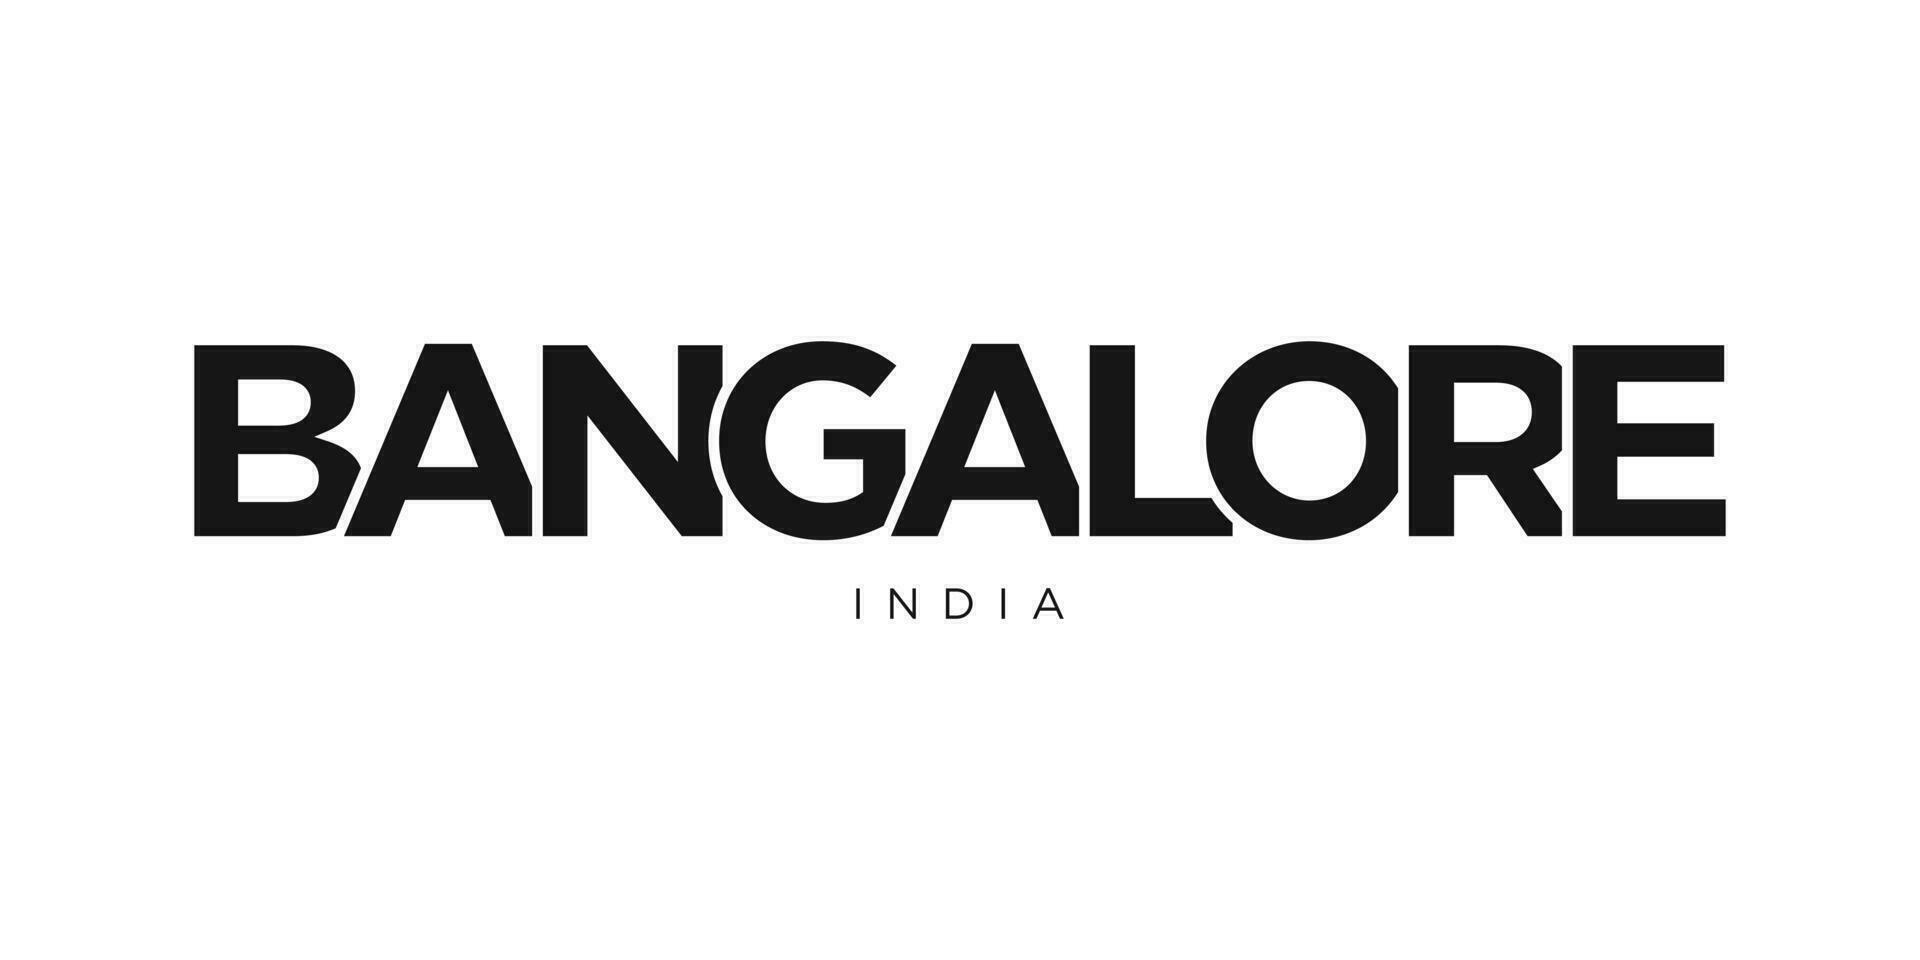 Bangalore en el India emblema. el diseño caracteristicas un geométrico estilo, vector ilustración con negrita tipografía en un moderno fuente. el gráfico eslogan letras.